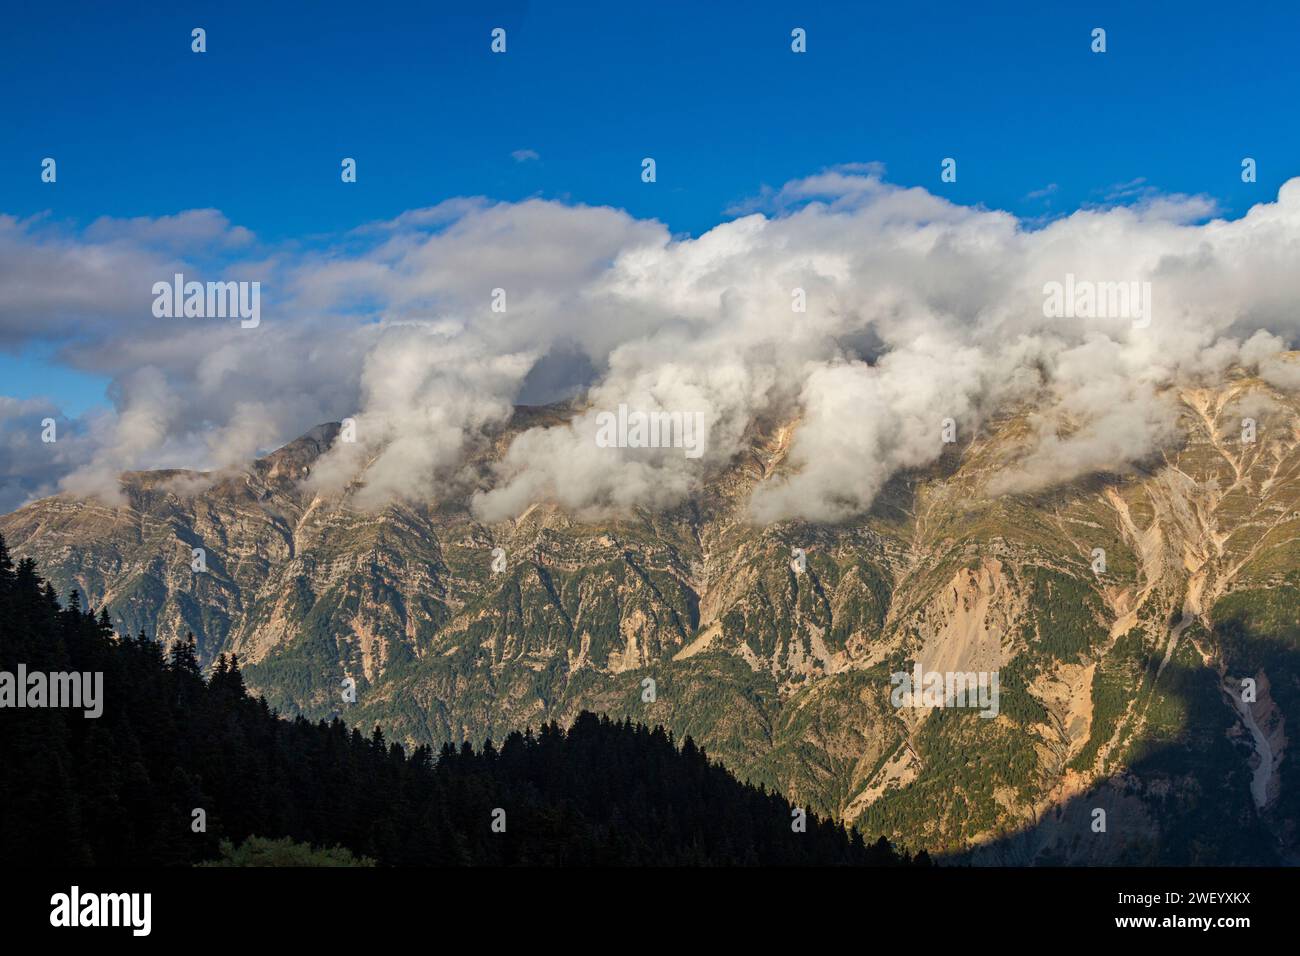 Incredibile copertura di nuvole basse sulle montagne di Tzoumerka, vicino al tradizionale villaggio di Pramanta, nella regione montuosa dell'Epiro, Grecia, Europa Foto Stock